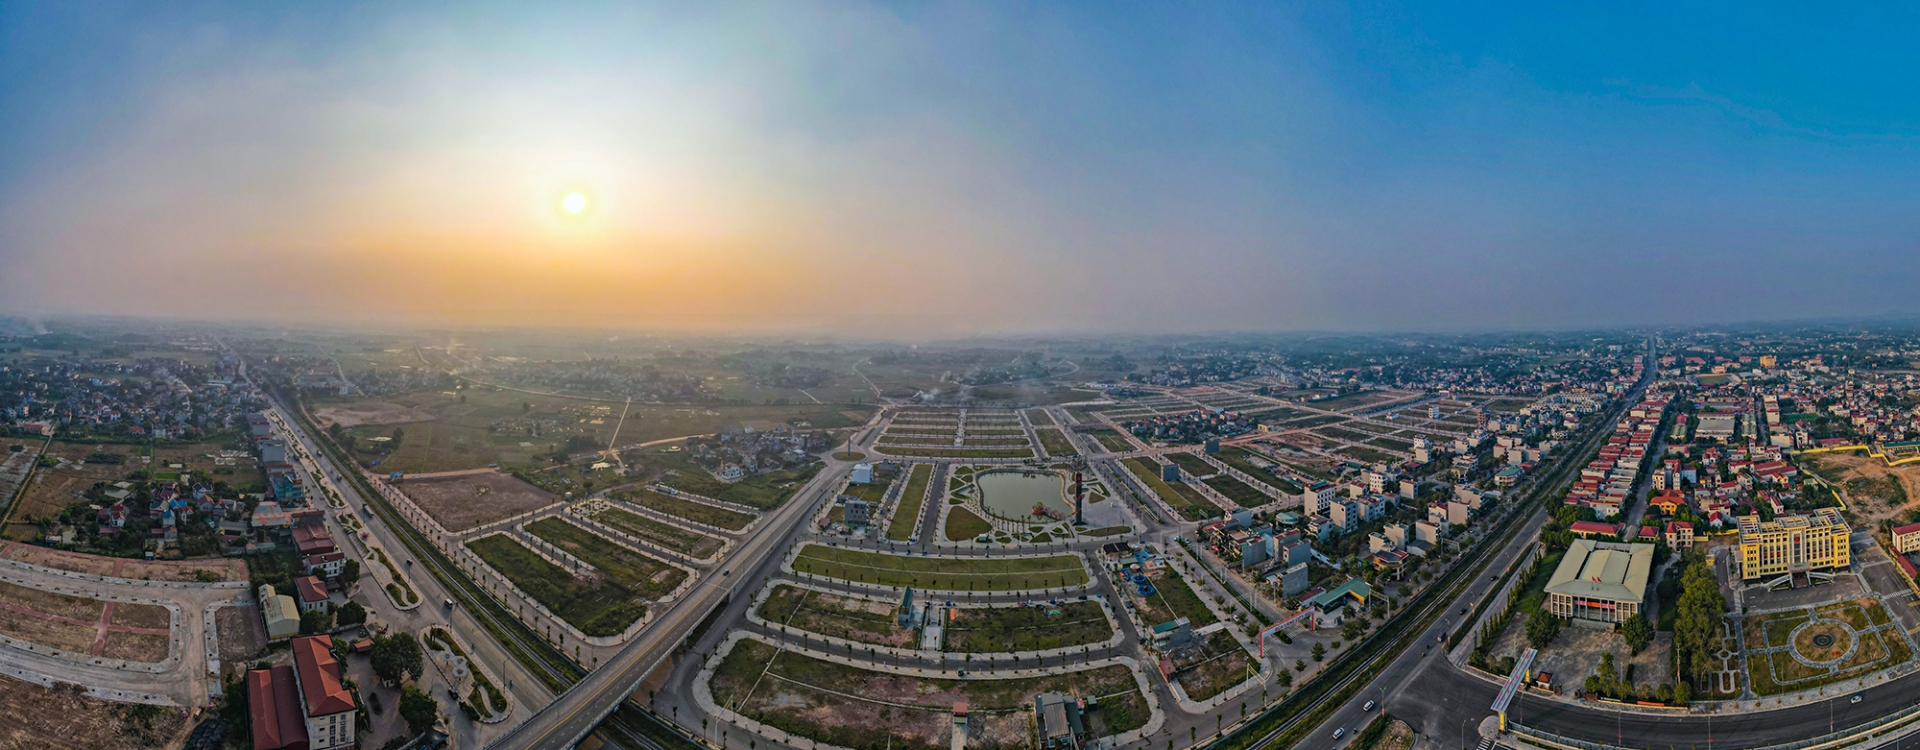 Diện mạo mới, sức sống mới của đô thị Bắc Giang